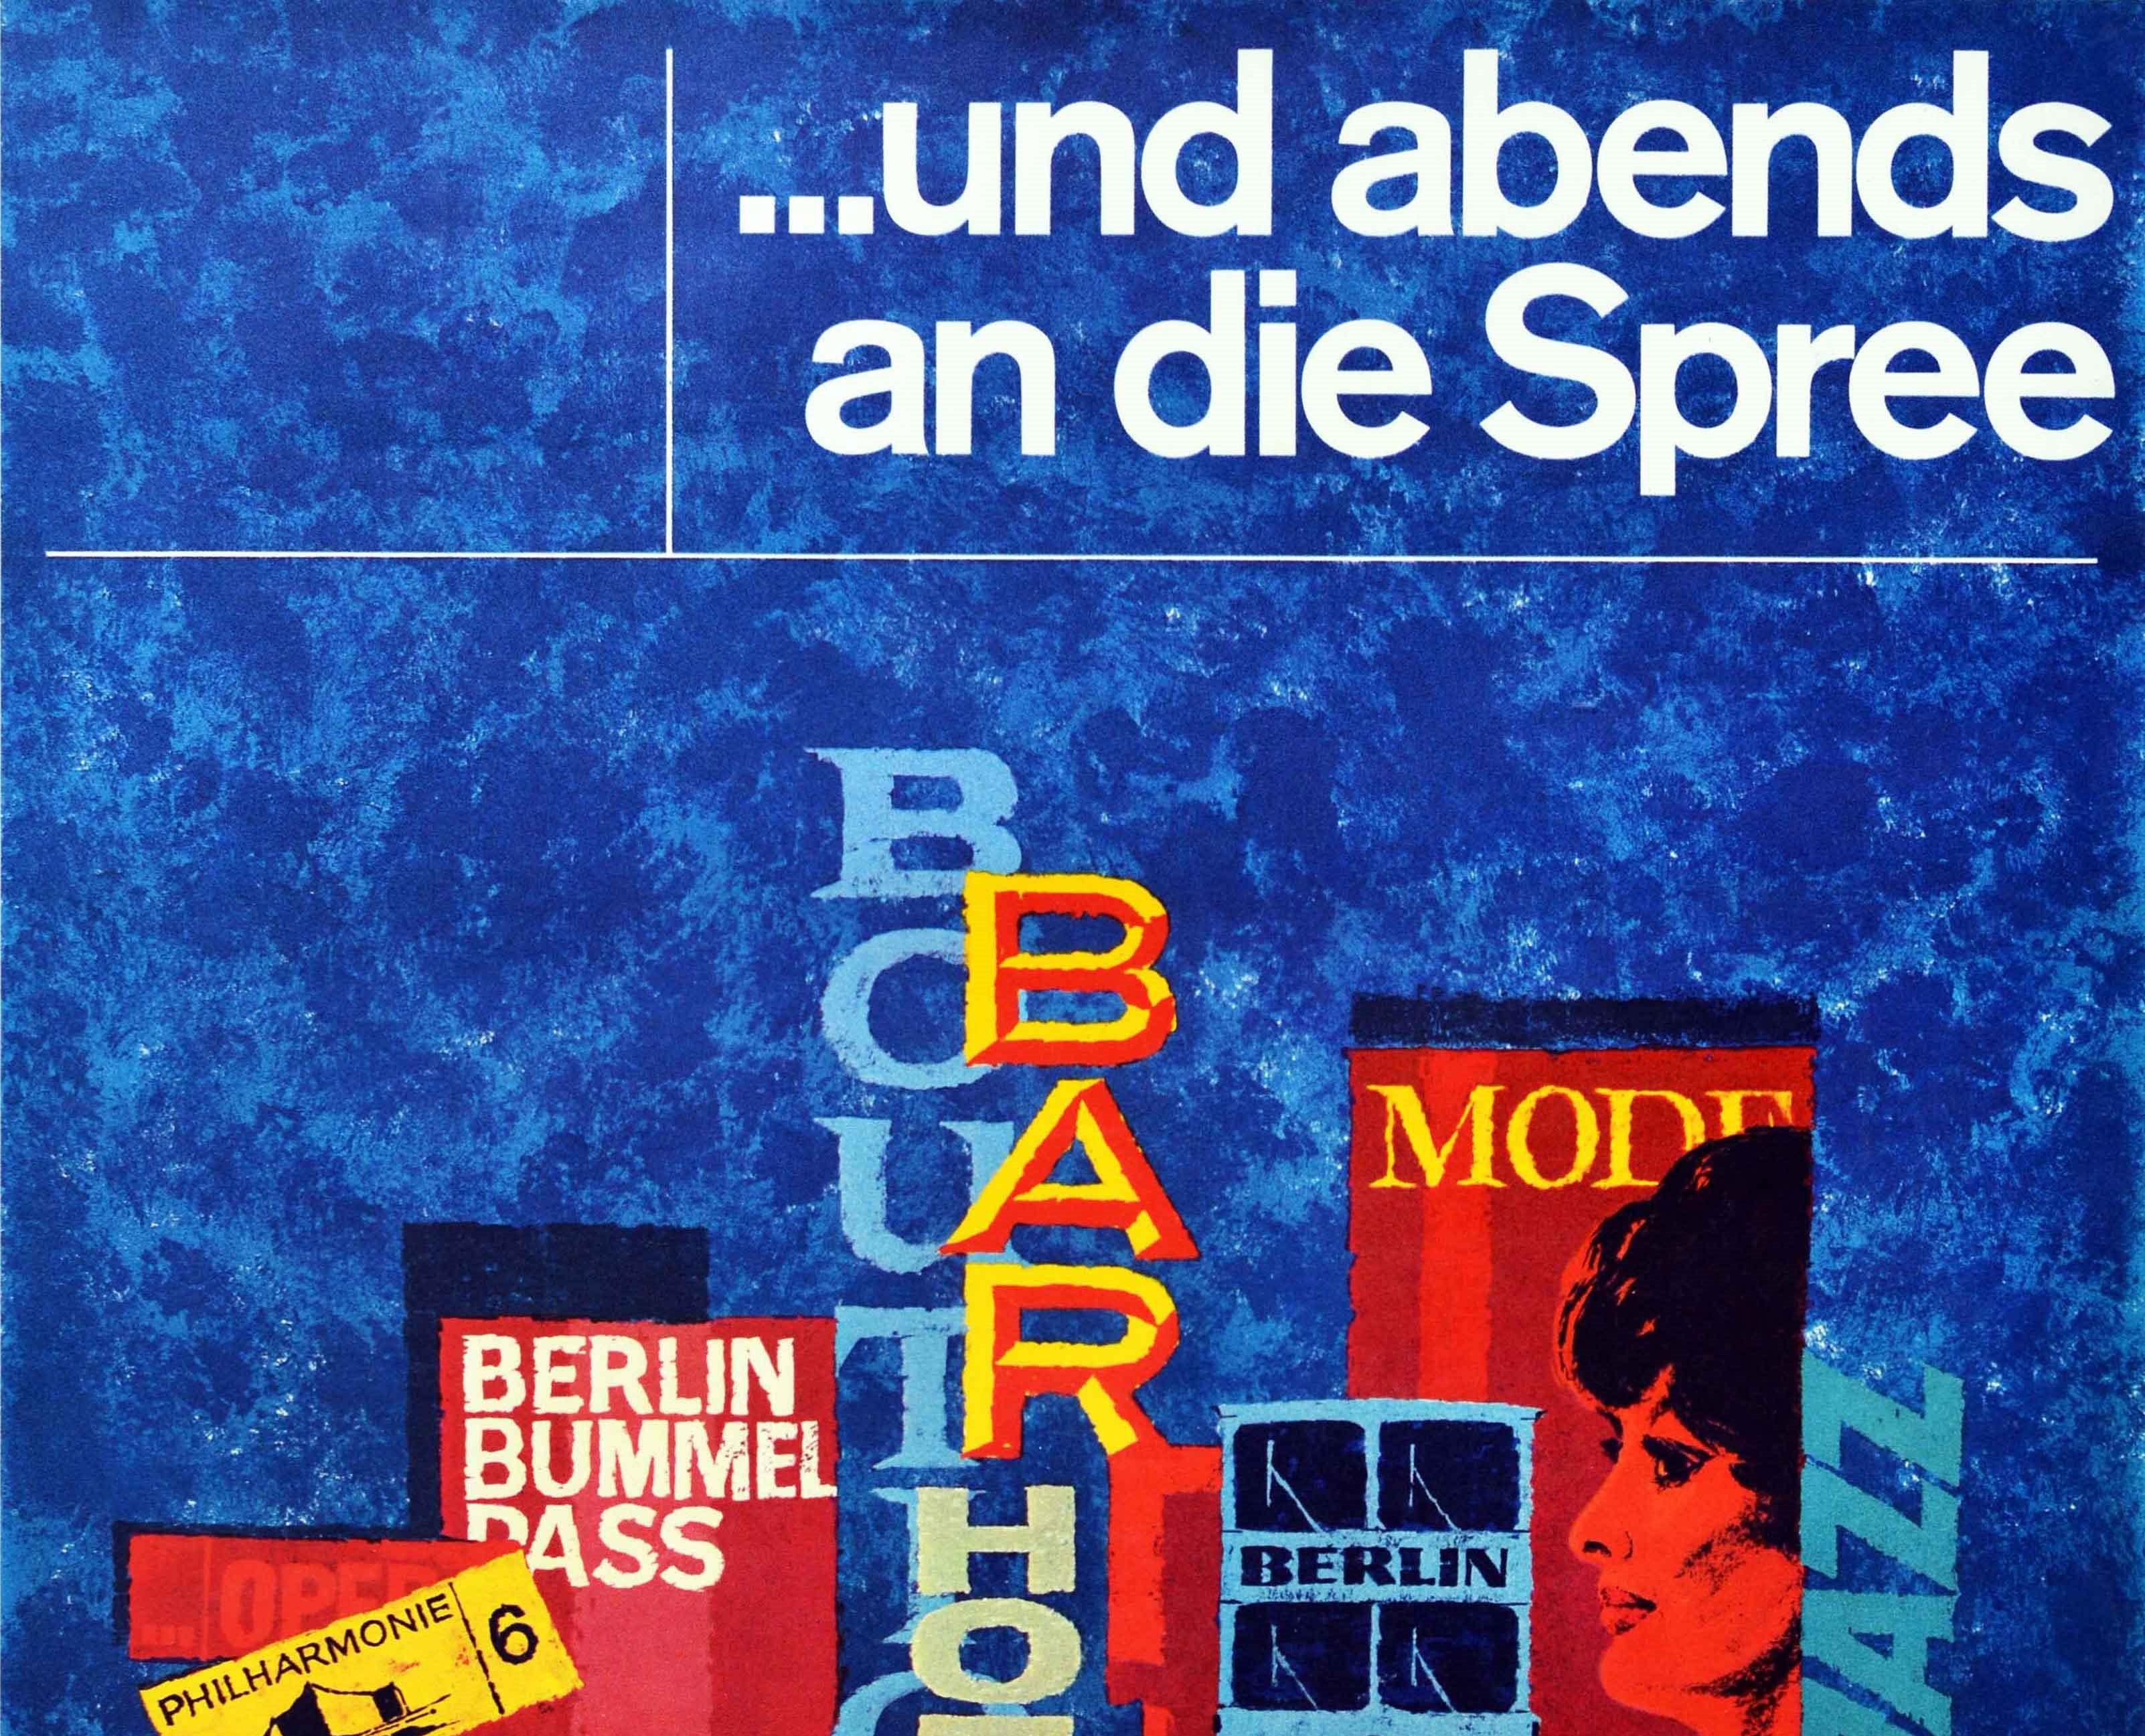 Original Vintage-Reiseplakat für Berlin - und abends an die Spree - mit einem farbenfrohen Design mit einer Montage von Wörtern in verschiedenen Schriftarten und Farben mit der Aufschrift Bar Hotel Beat Cafe Boutique Theater Jazz mit einem Schild